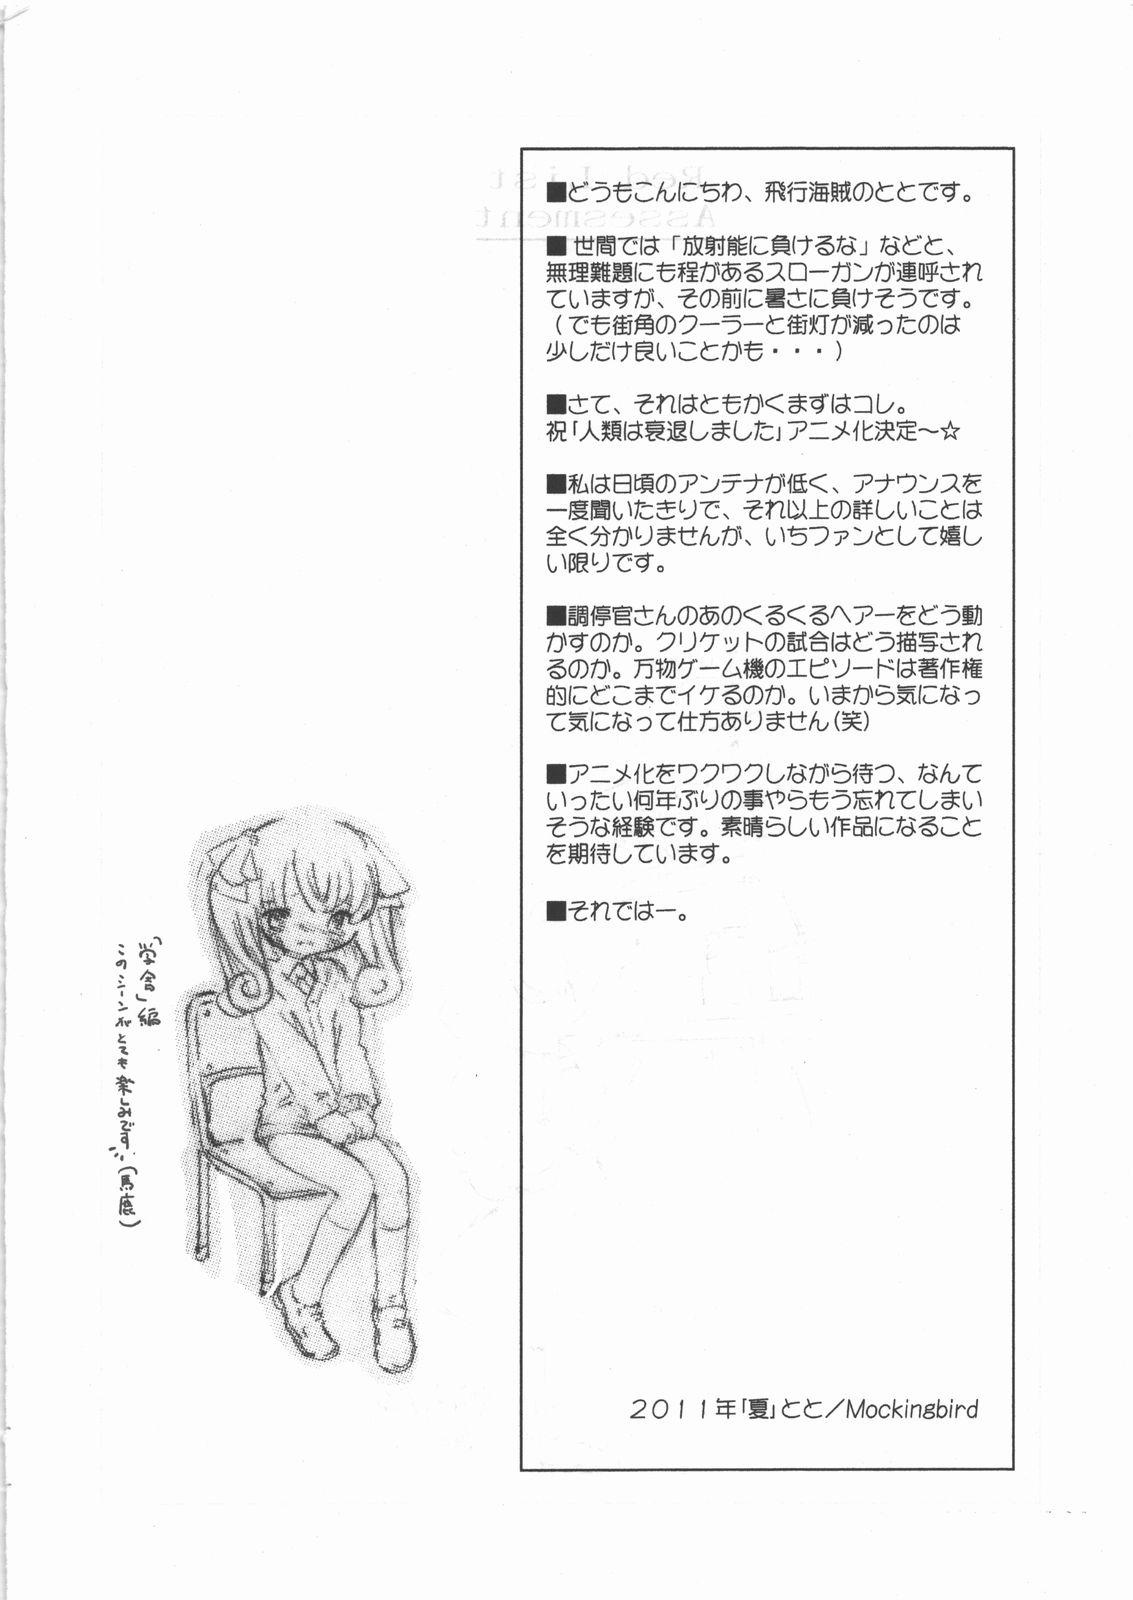 Novinho Red List Assessment - Zetsumetsu Kigushu San - Jinrui wa suitai shimashita Cums - Page 3